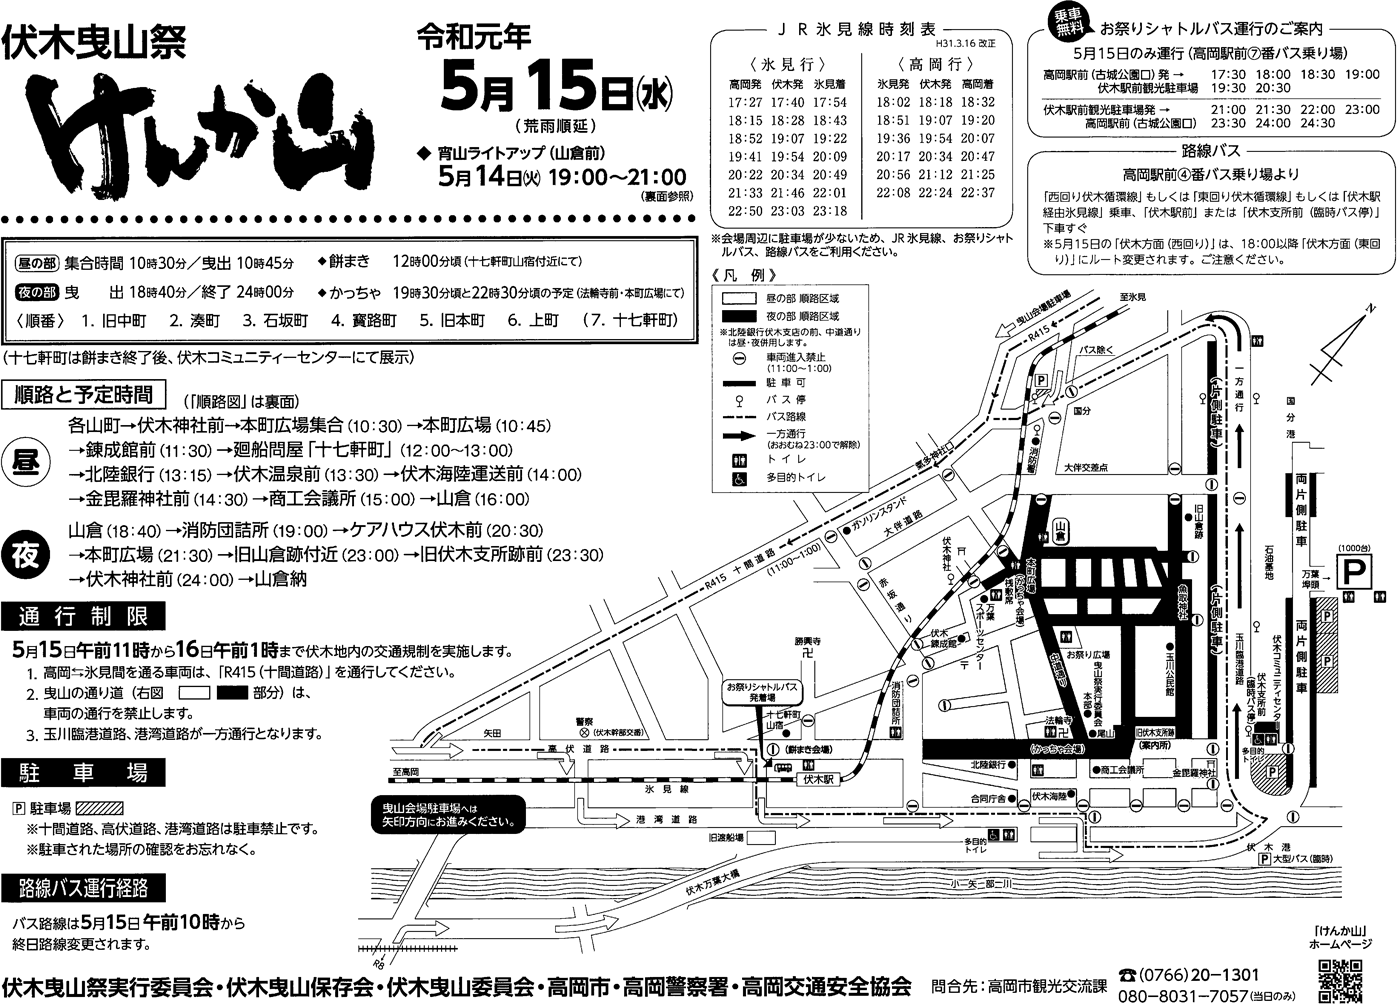 伏木神社例大祭・伏木けんか山2019の本祭の交通規制地図